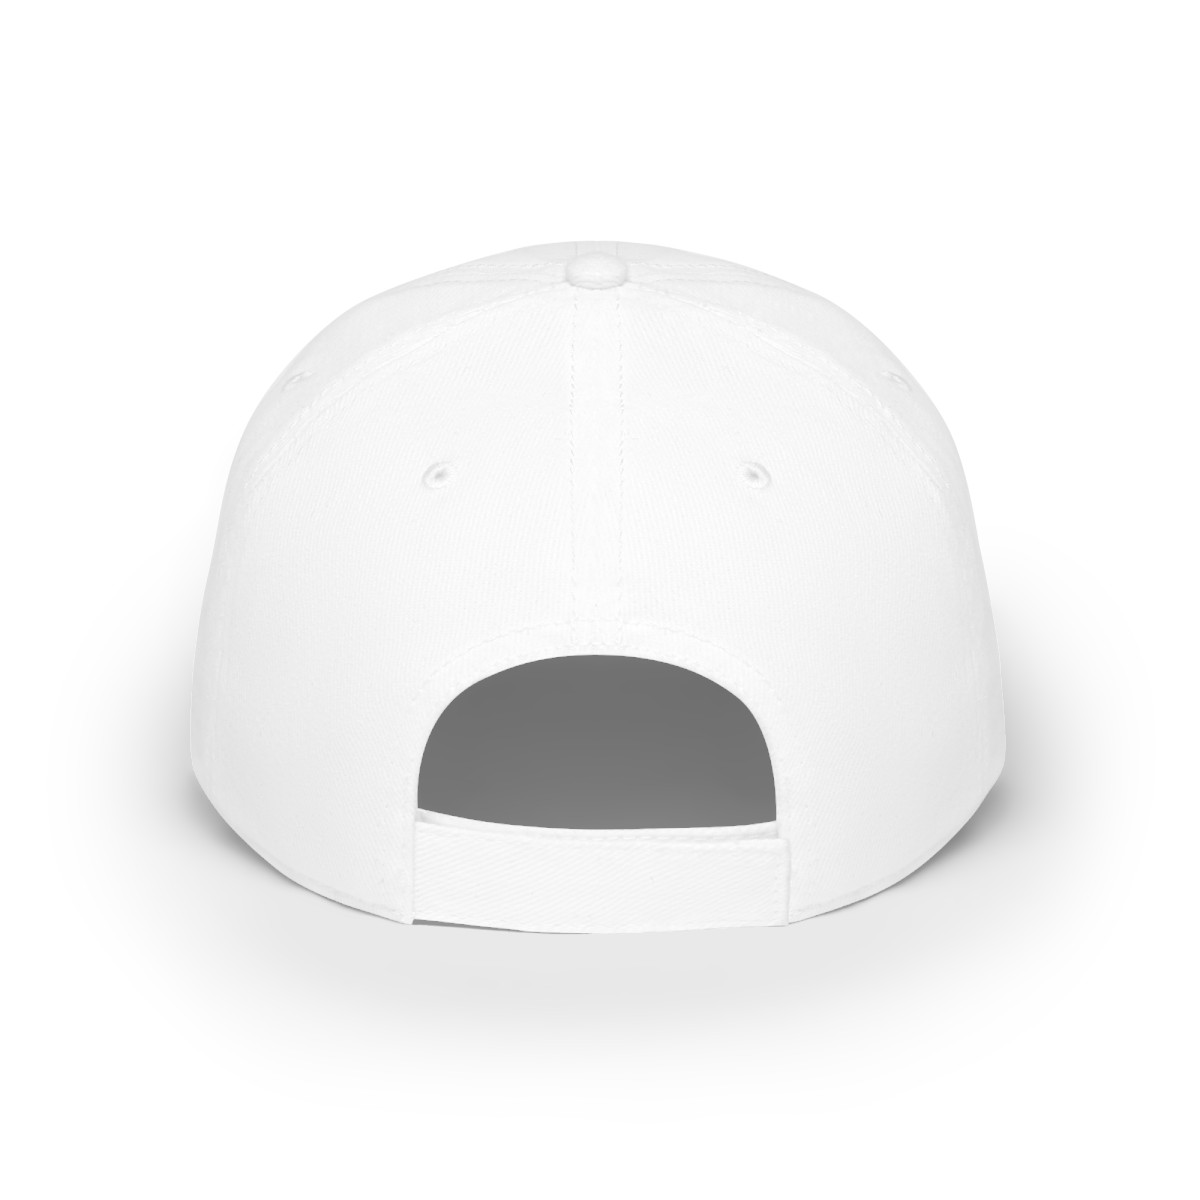 Coding God Broke the Repo - Baseball Cap (White) product thumbnail image